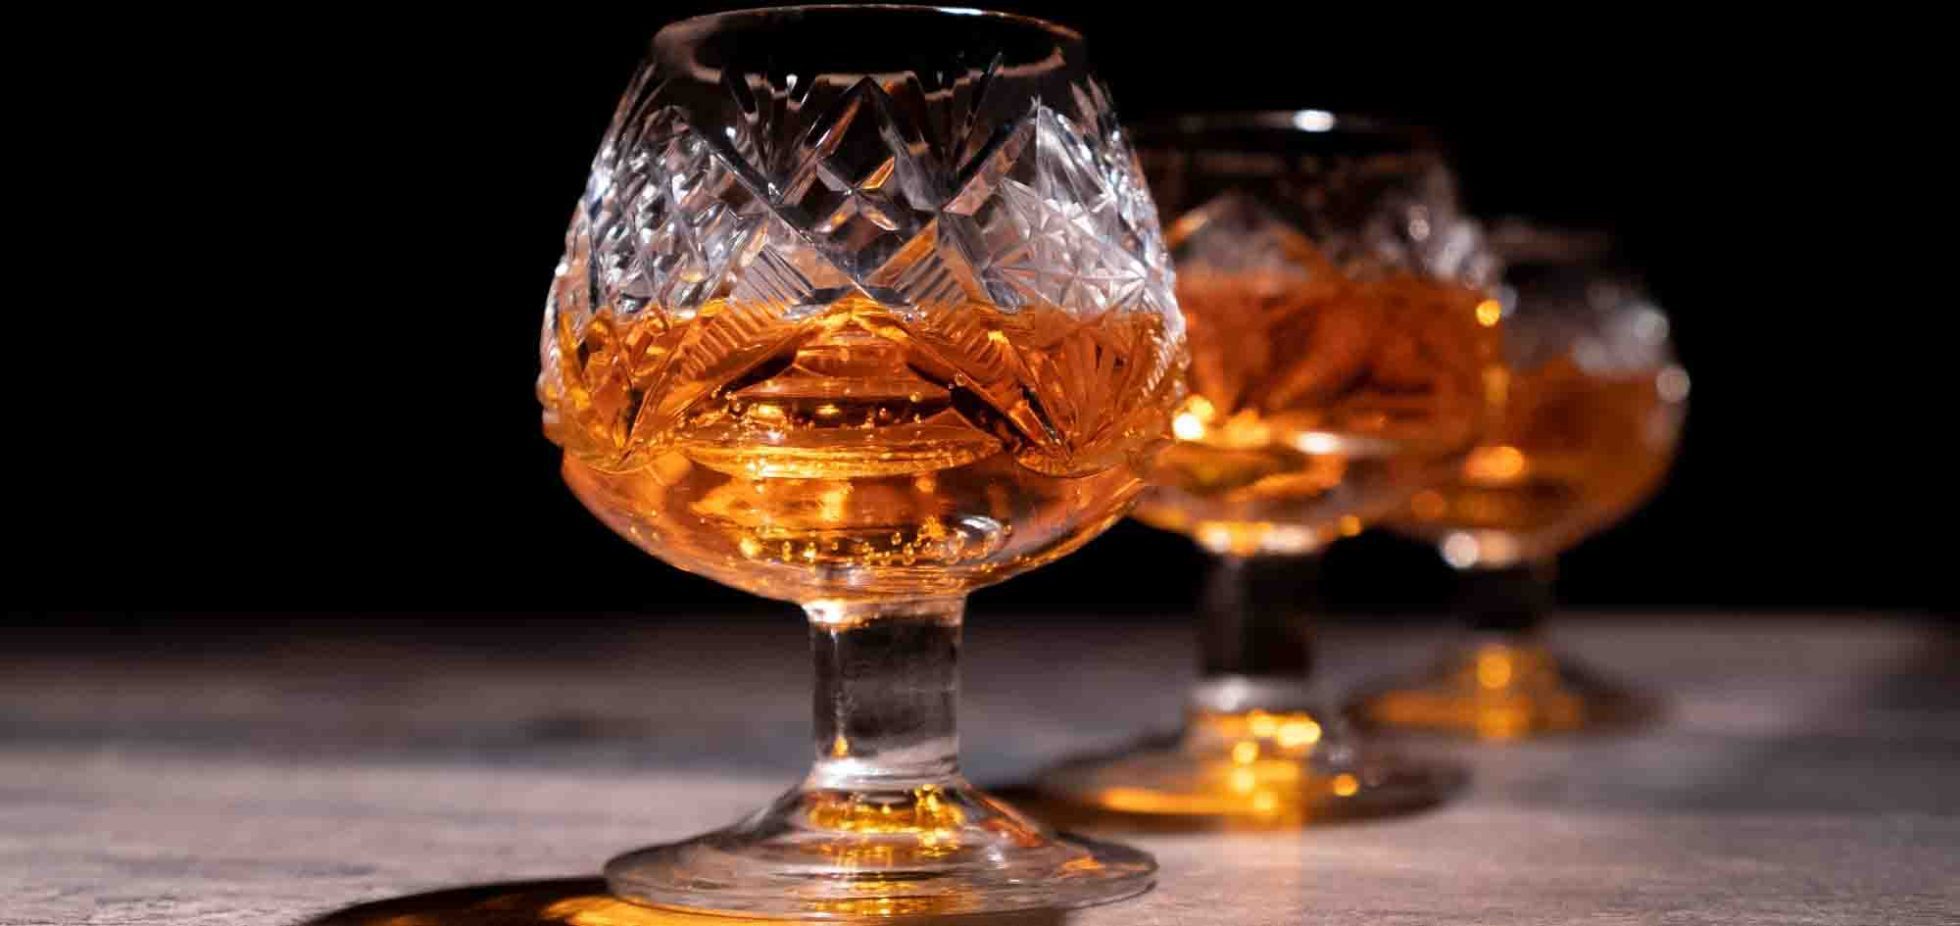 meilleur verre a whisky avis comparatif